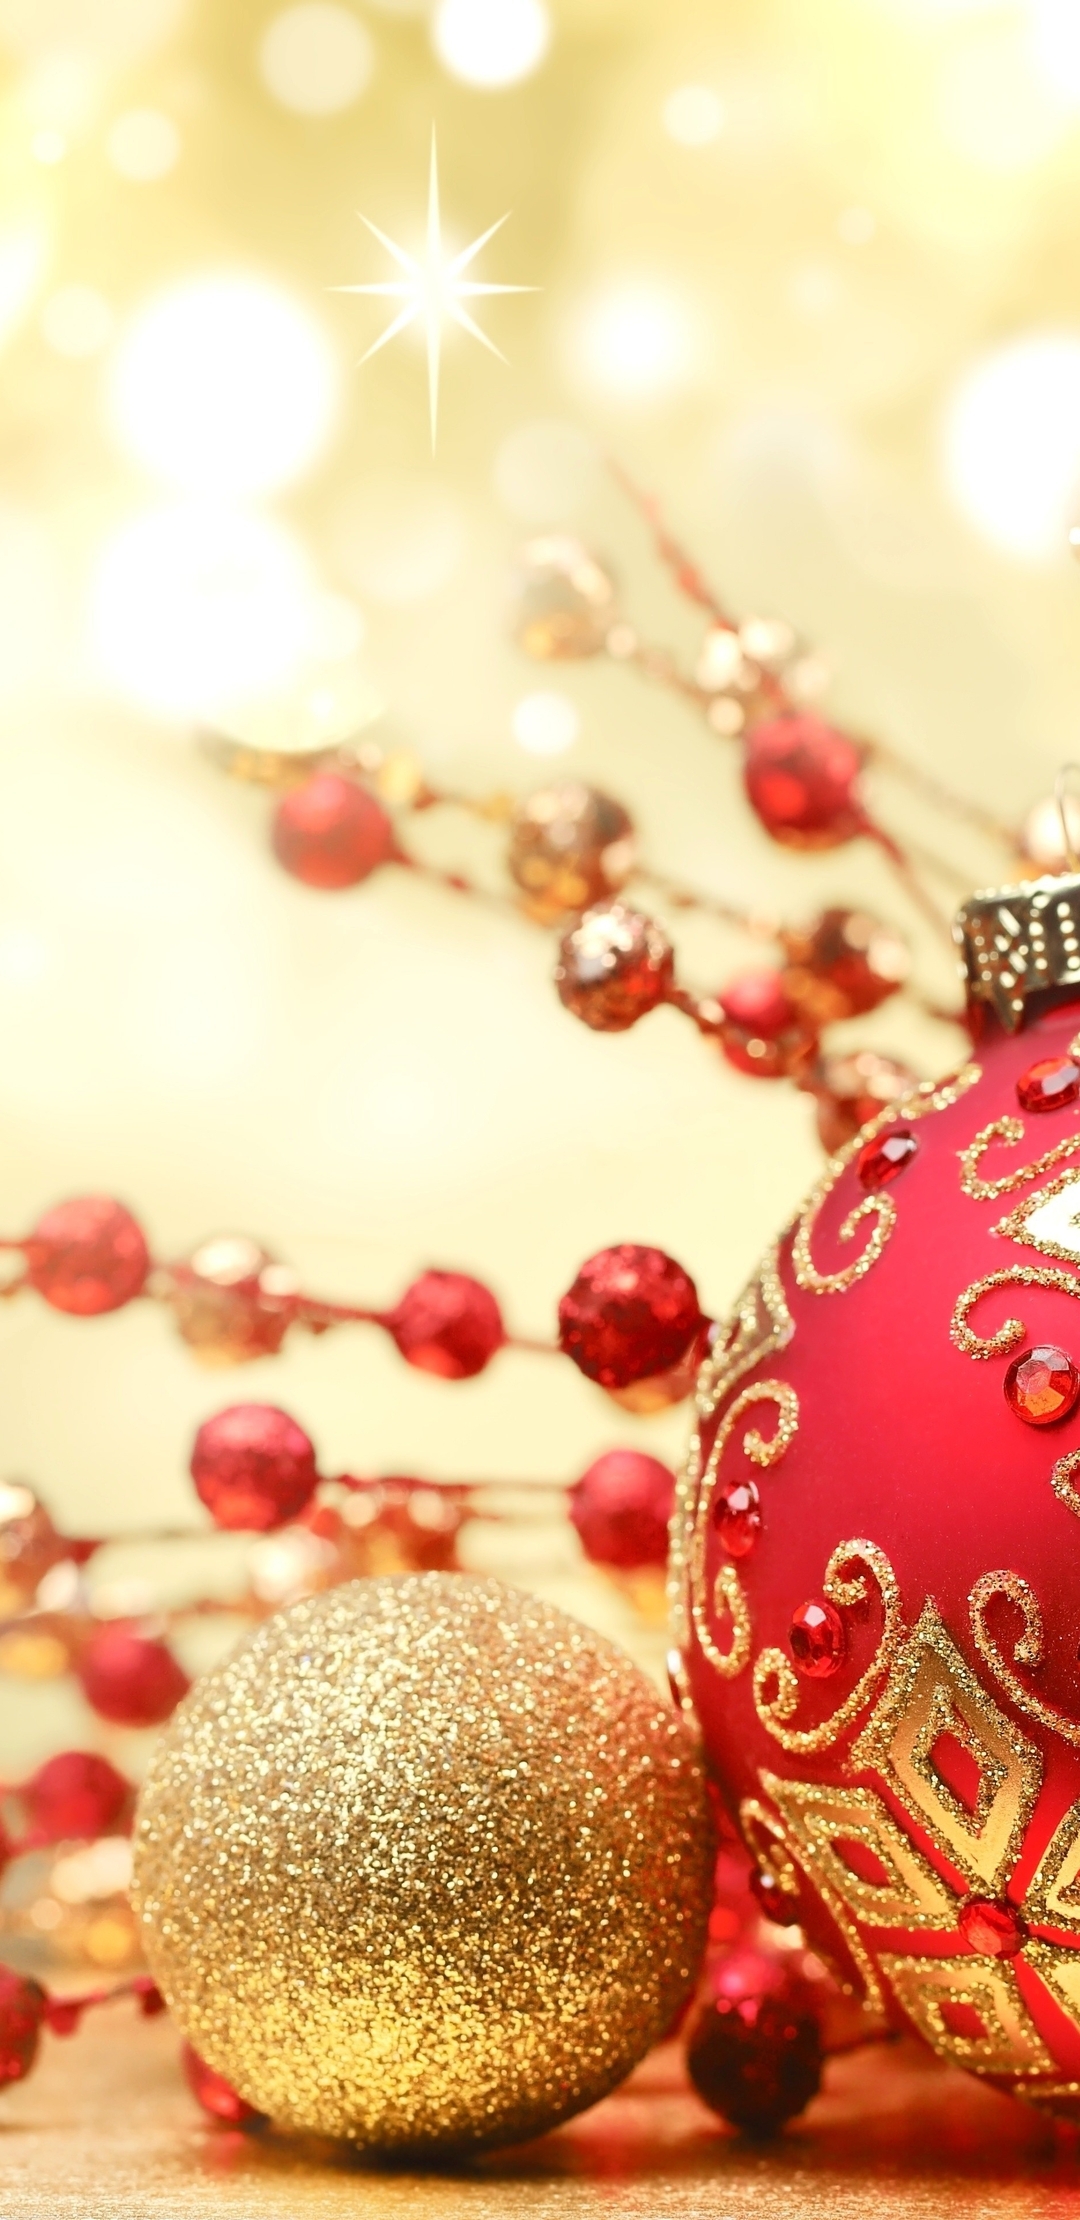 Картинка: Украшение, шары, новый год, игрушки, декор, красный, золотой, цвет